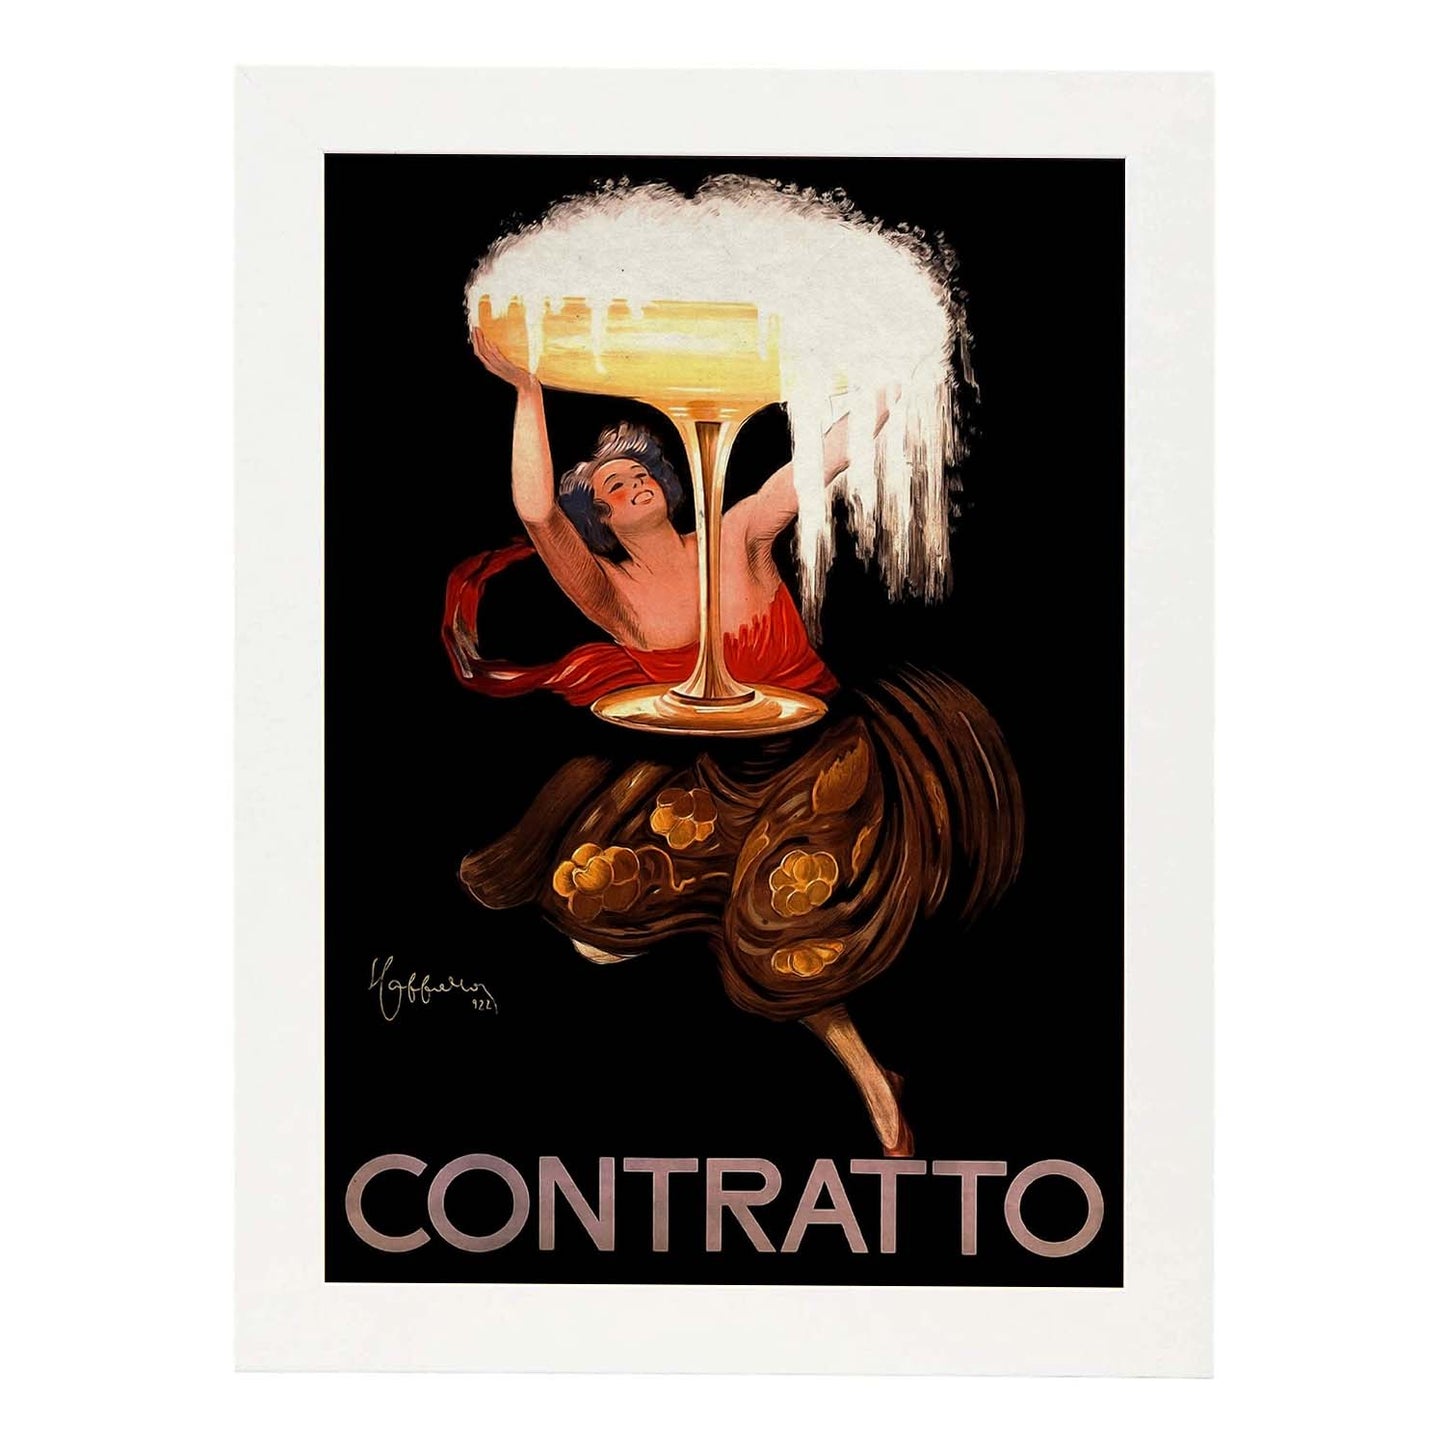 Poster vintage de Contratto. con imágenes vintage y de publicidad antigua.-Artwork-Nacnic-A3-Marco Blanco-Nacnic Estudio SL